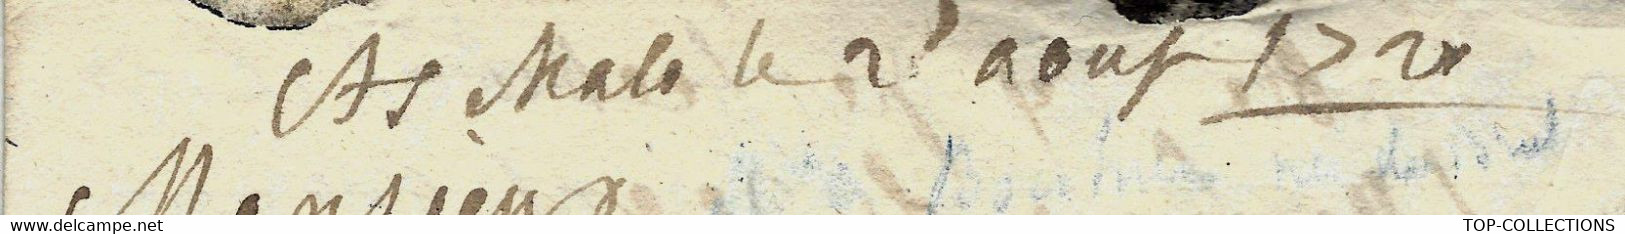 1720  MARQUE POSTALE  St Malo Saint-Malo => Dumesnil  Vitré  BRETAGNE NOBLESSE  NOMS cités  "Chateau doré"  sign.+texte